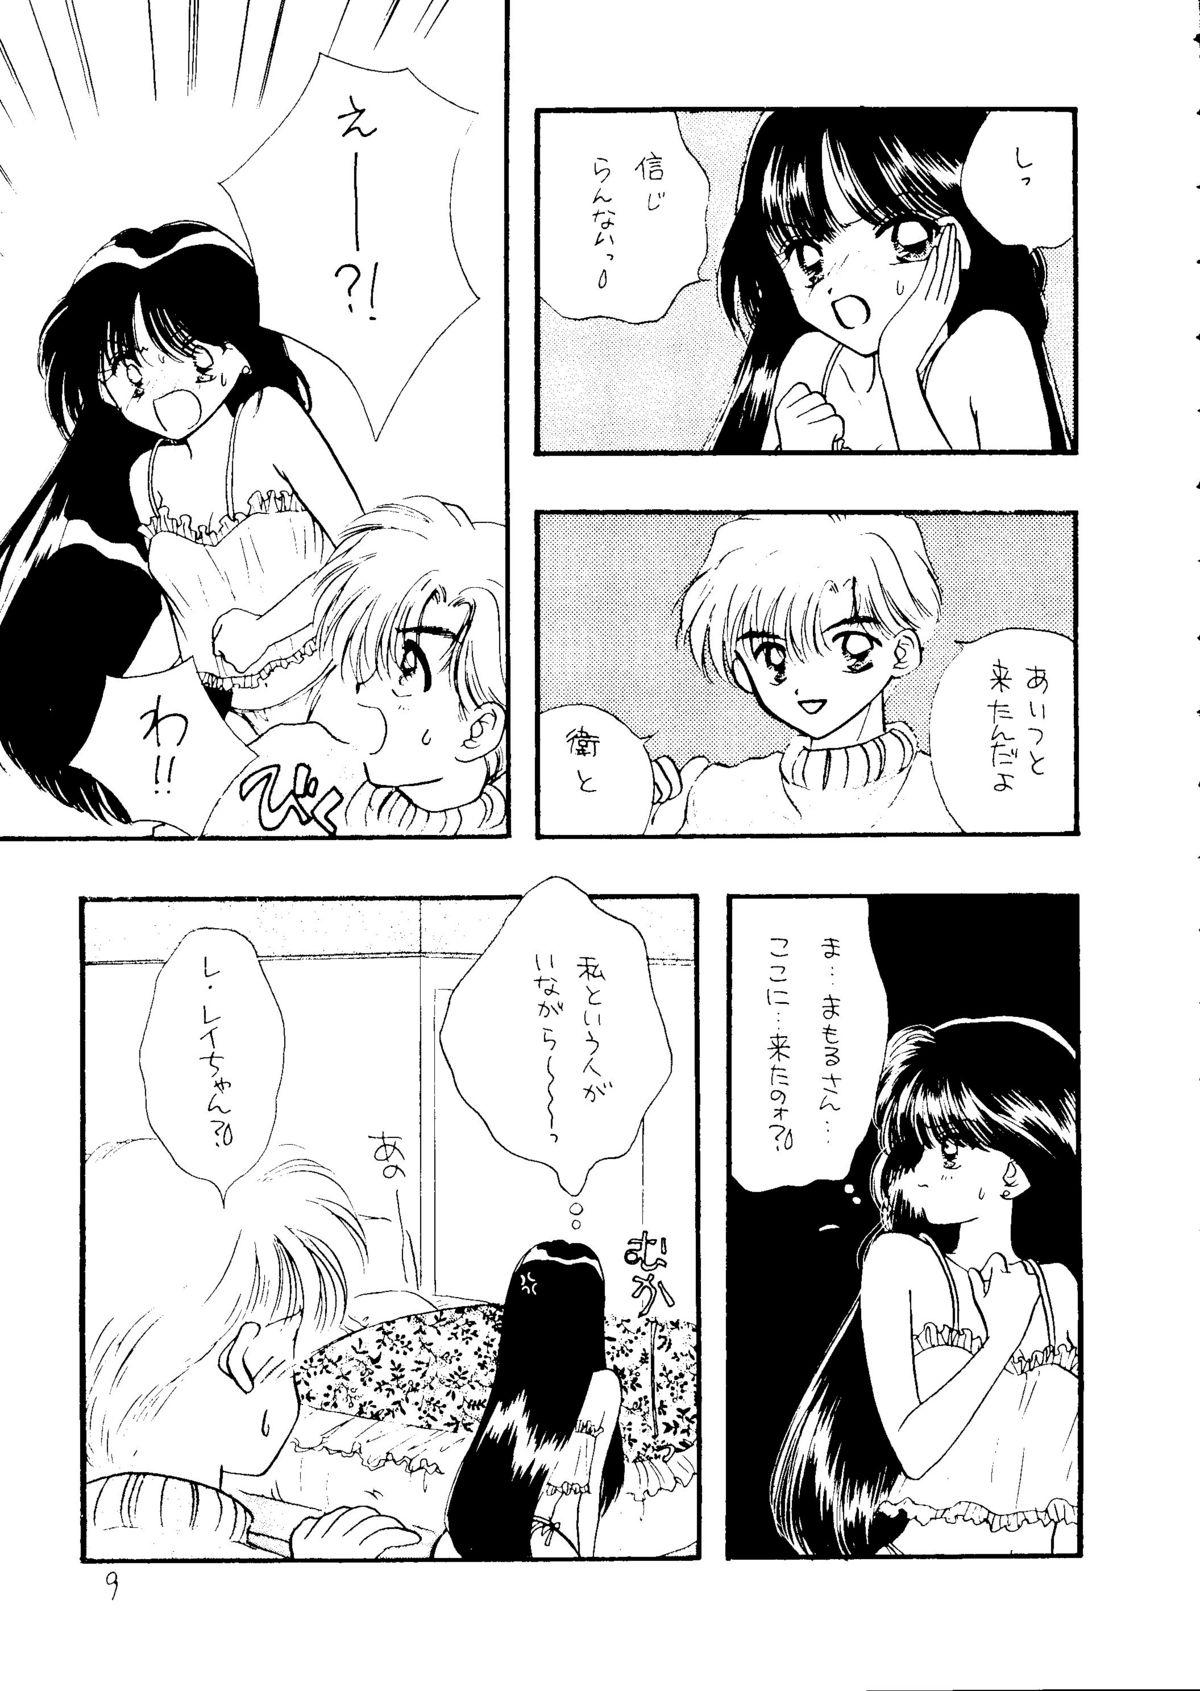 Shemale Sex Ayakaritai65 - Sailor moon Thong - Page 8